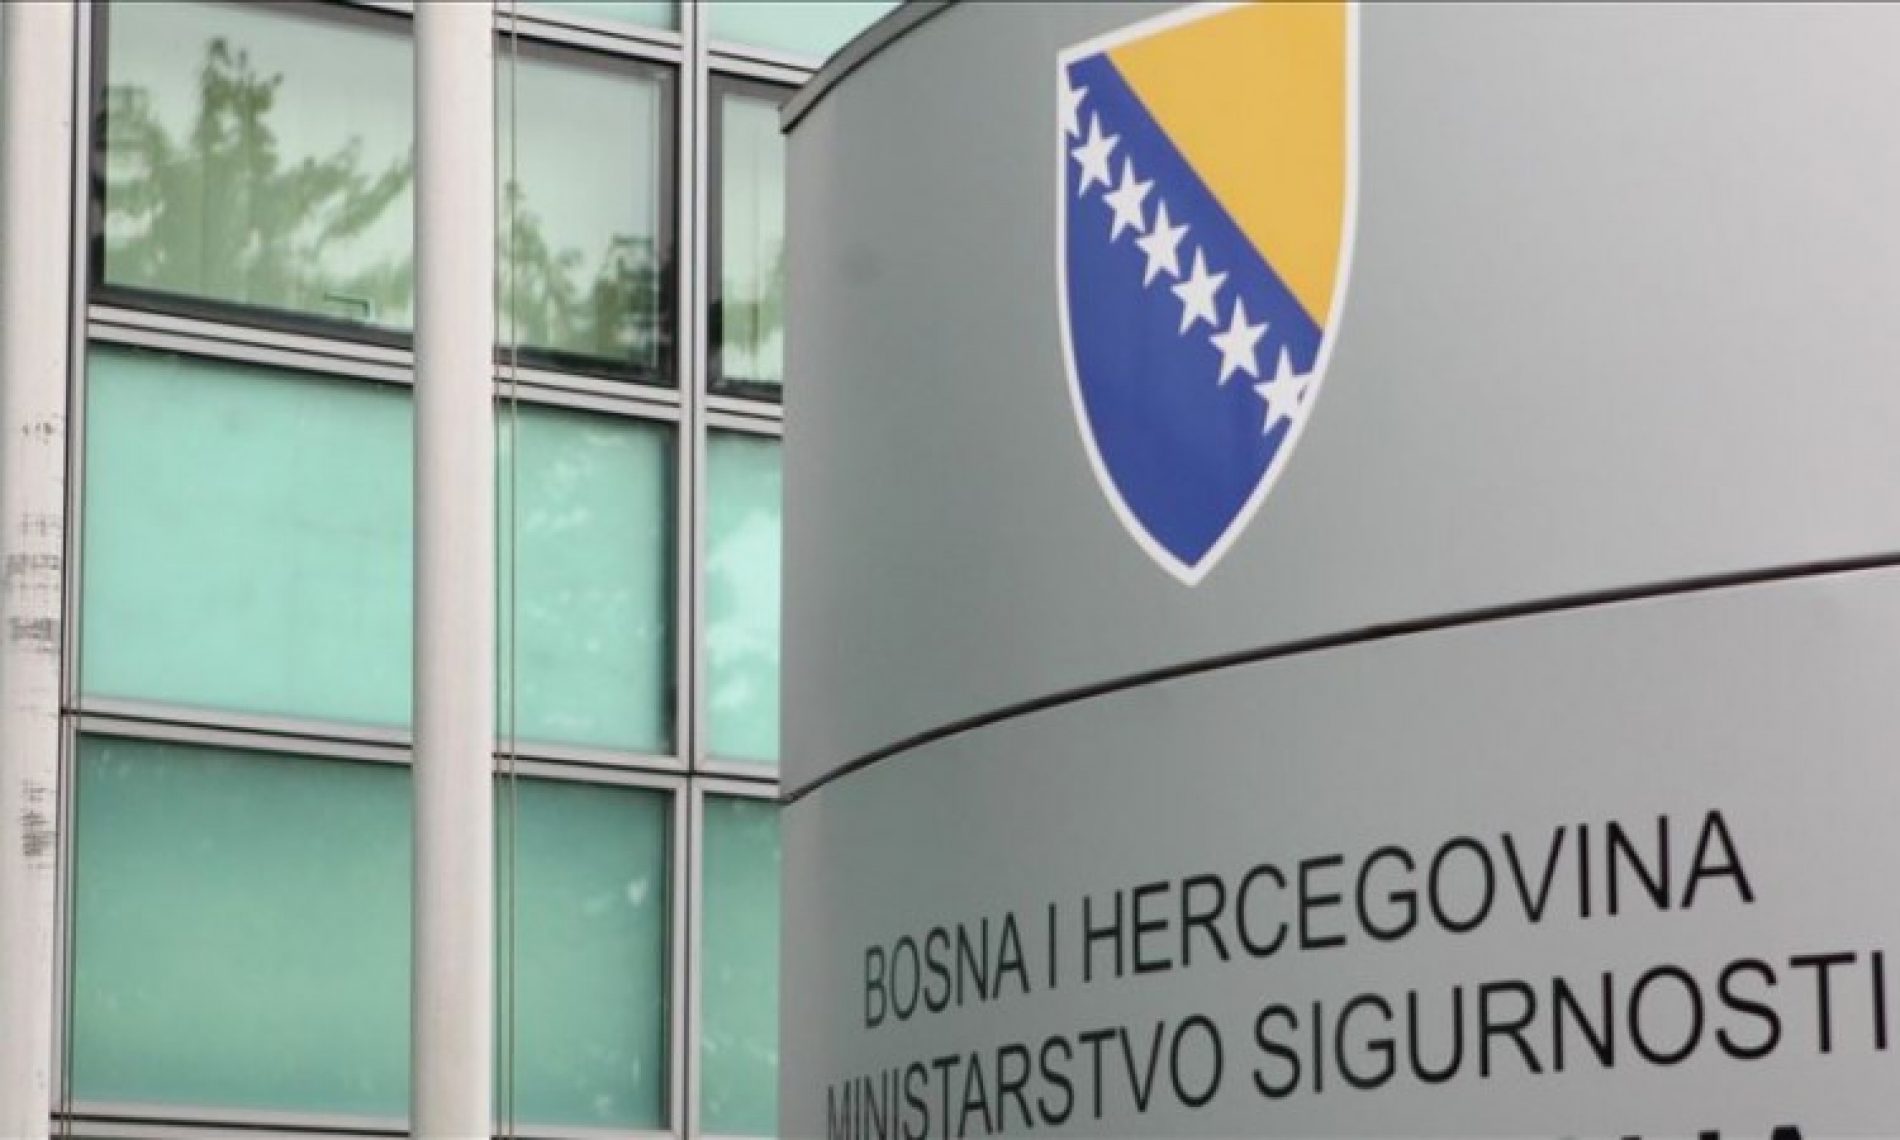 Bosna ponudila pomoć Hrvatskoj nakon snažnog zemljotresa